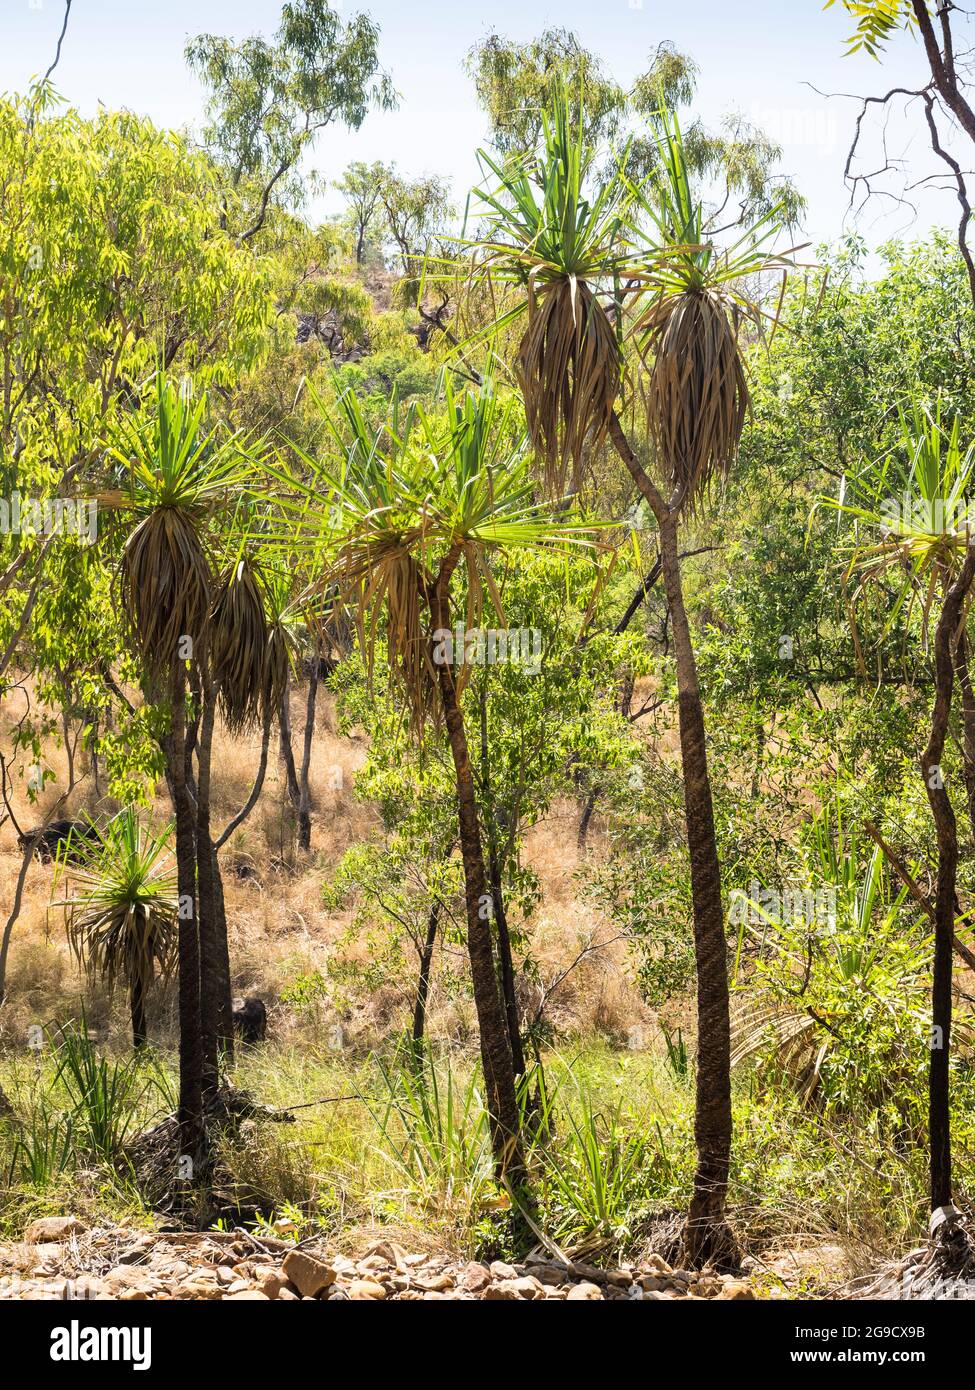 Les palmiers de pandanus (Screw) londent la piste de randonnée jusqu'à Bell gorge, Gibb River Road, Kimberley, Australie occidentale. Banque D'Images